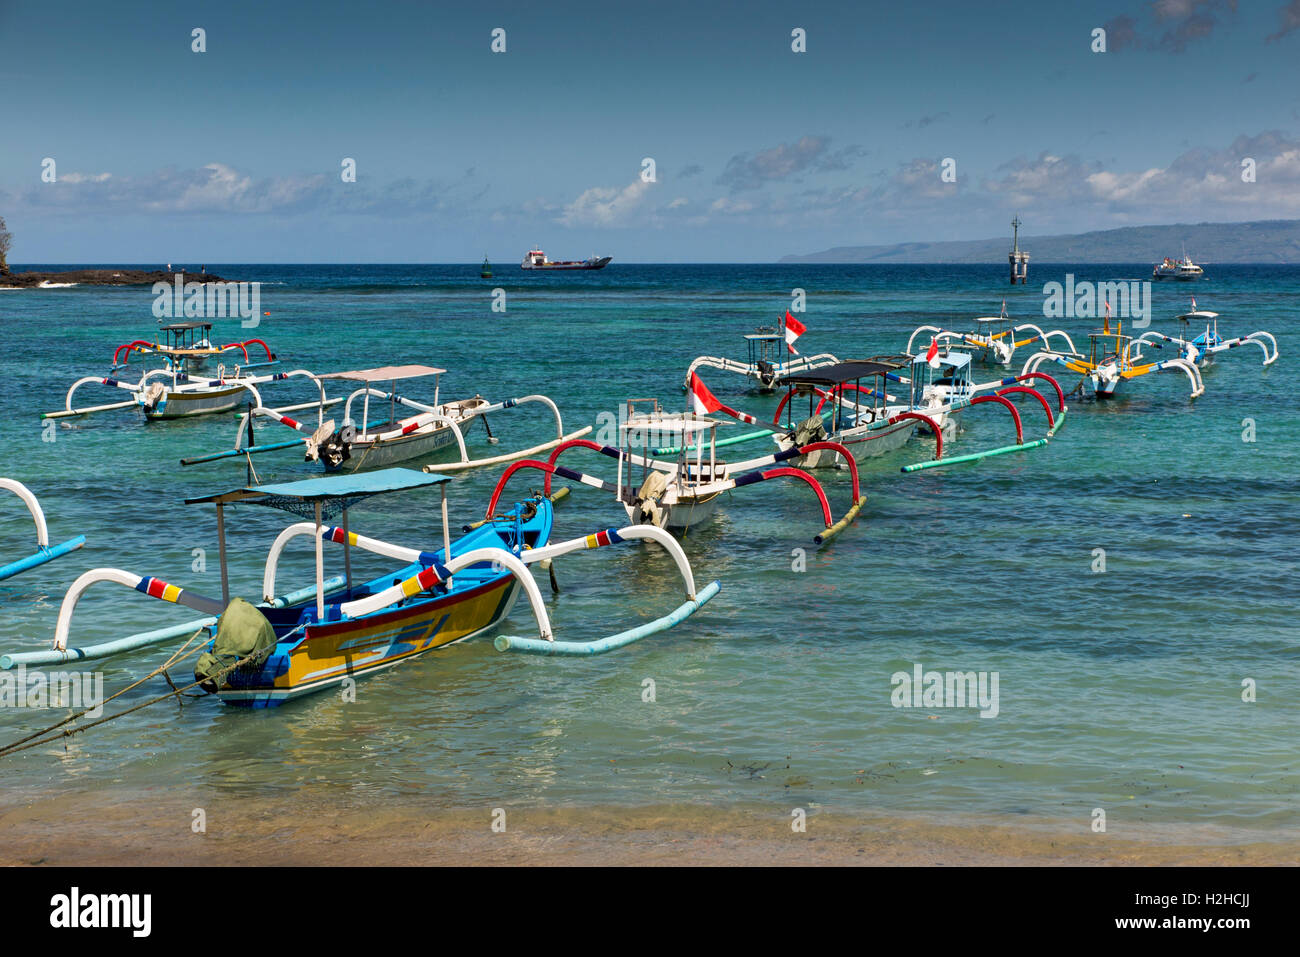 Indonesien, Bali, Padangbai, traditionell bemalten Fischerboote vor Anker in der Bucht Stockfoto